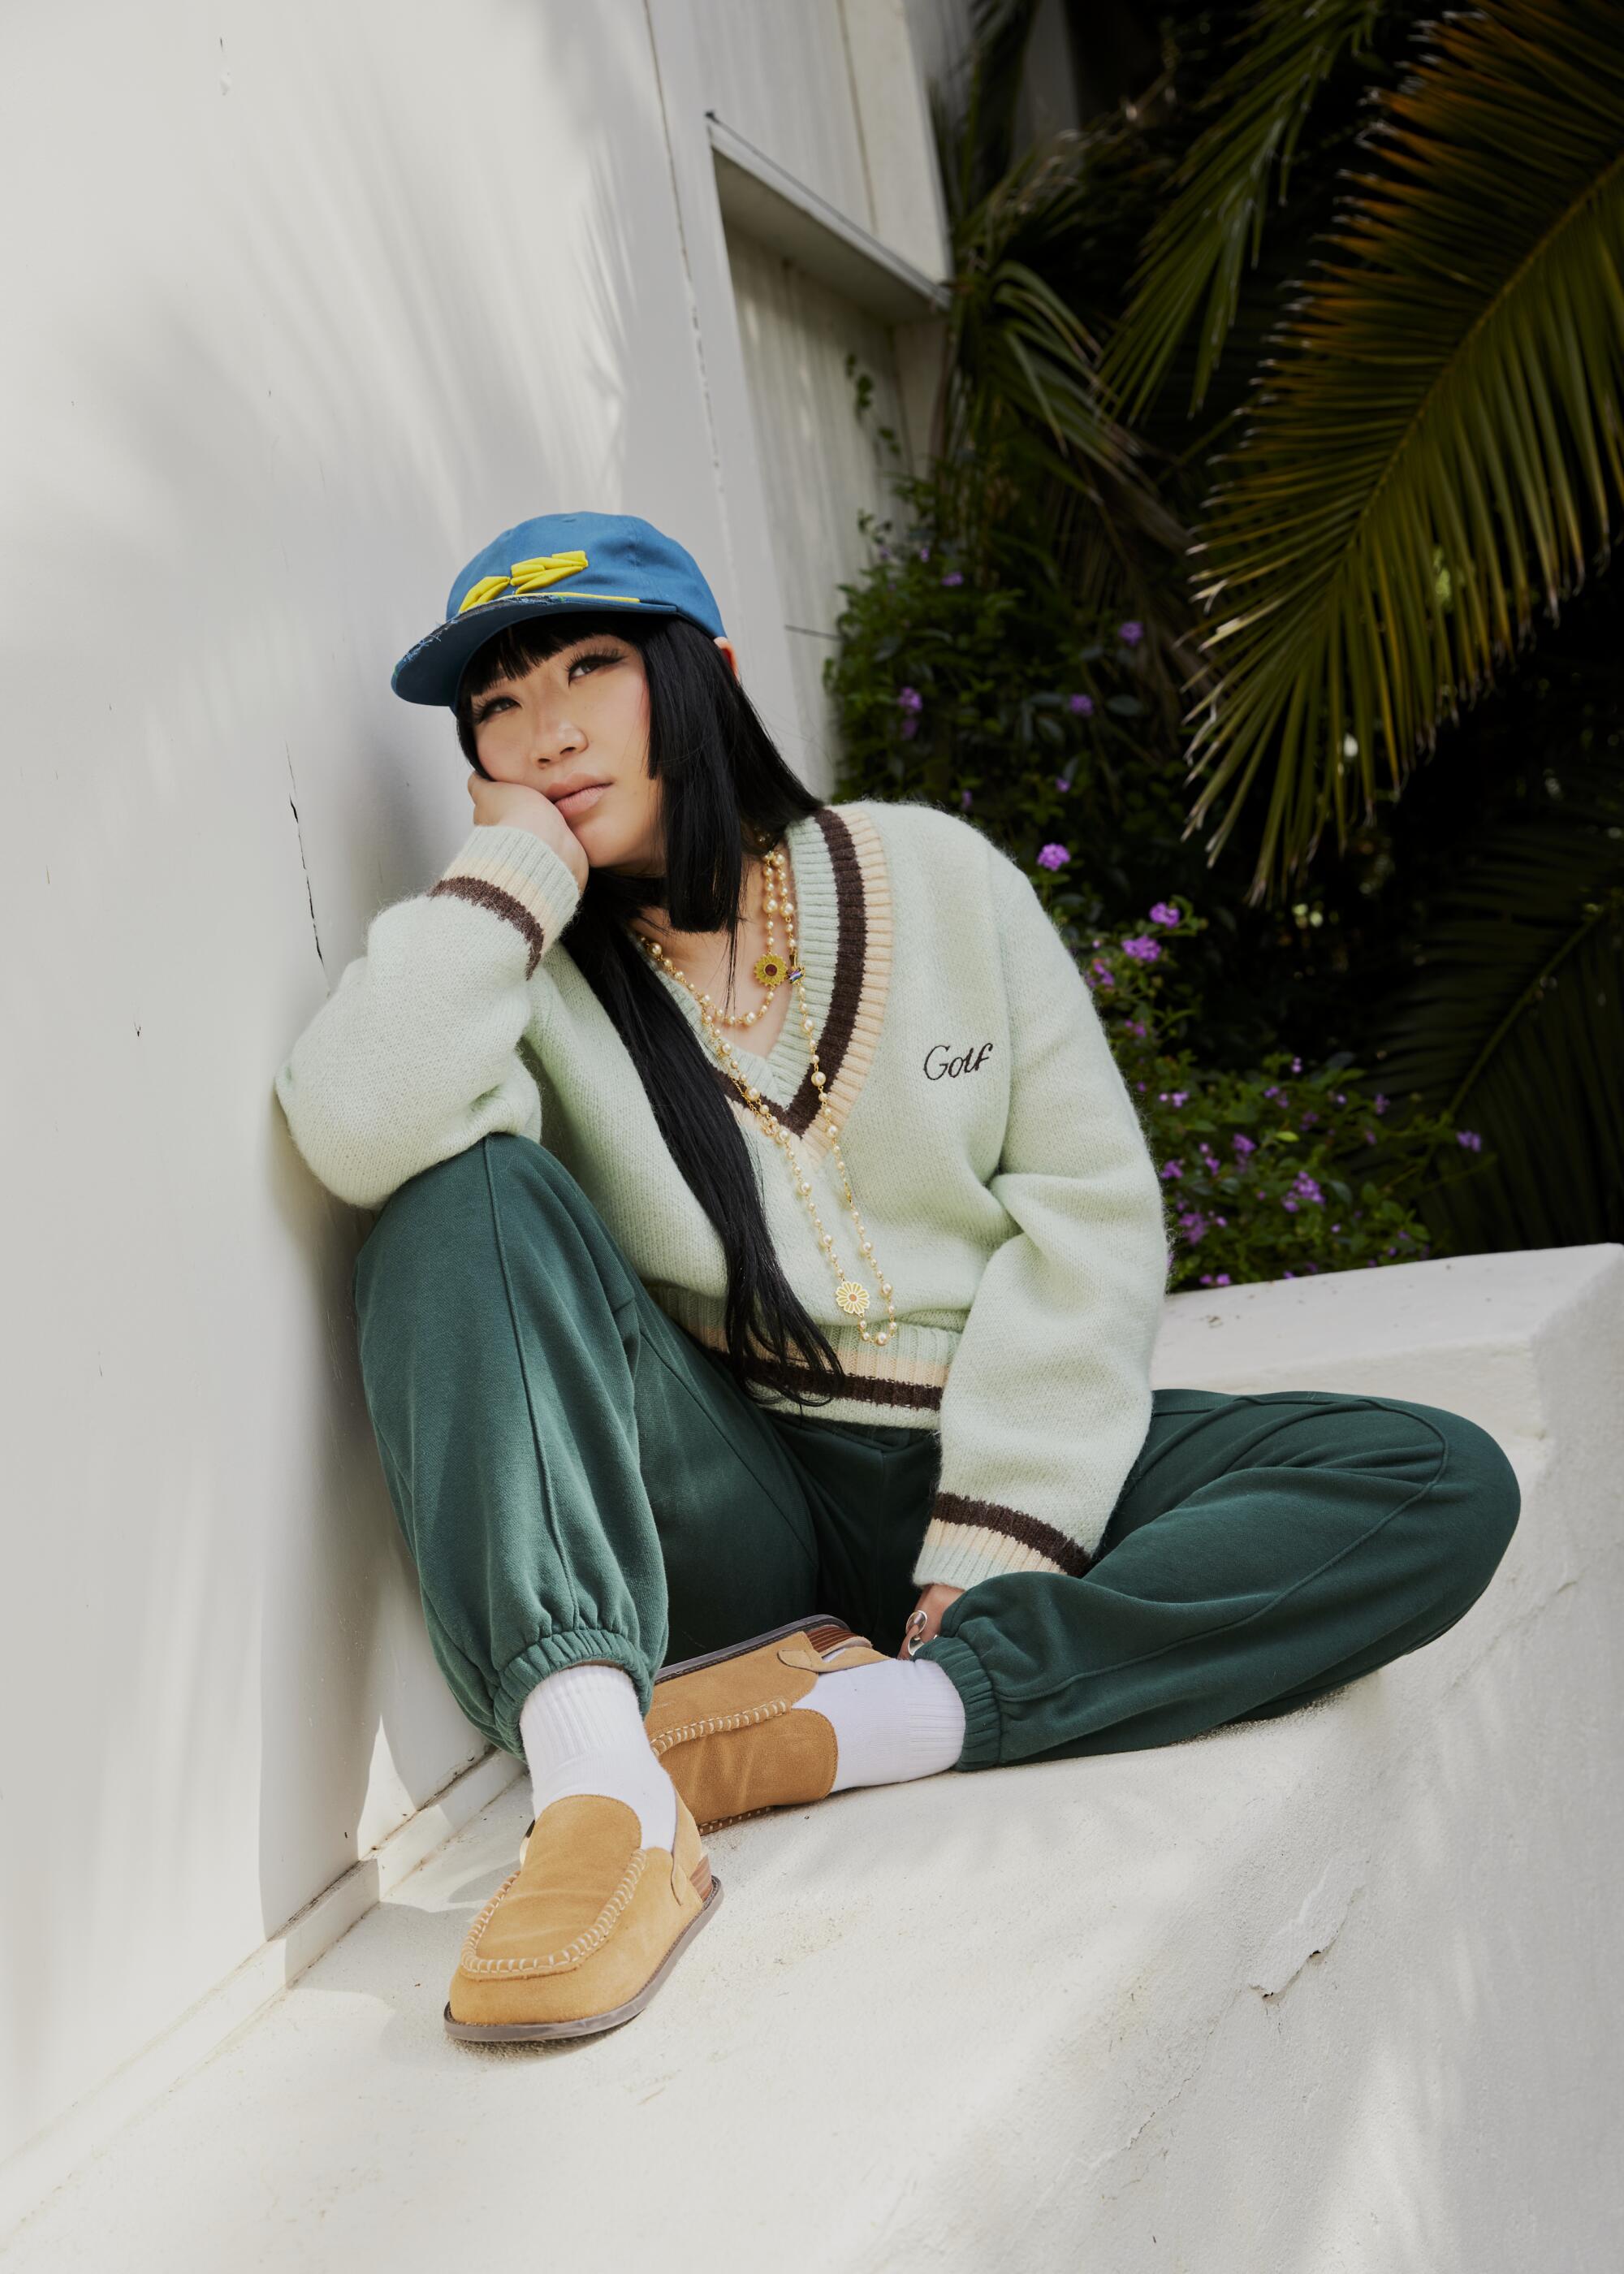 La styliste Jess Mori porte une tenue entièrement verte et une casquette bleue.